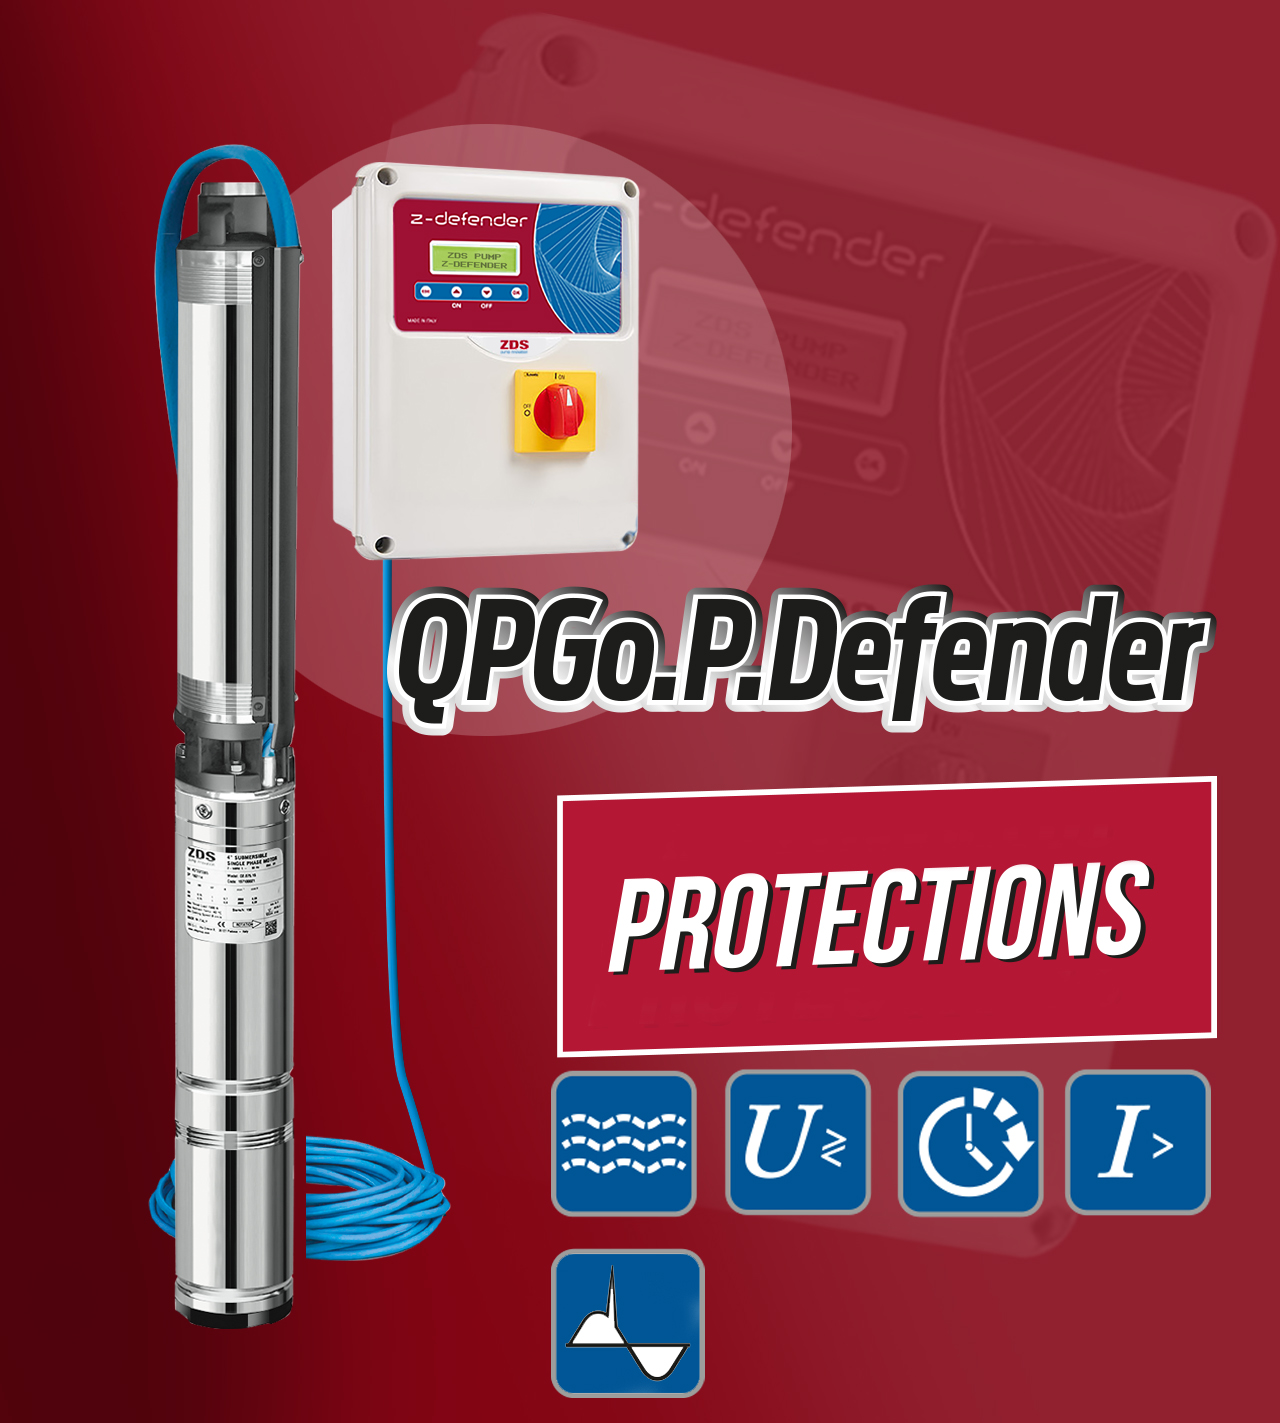 QPGo.P.Defender